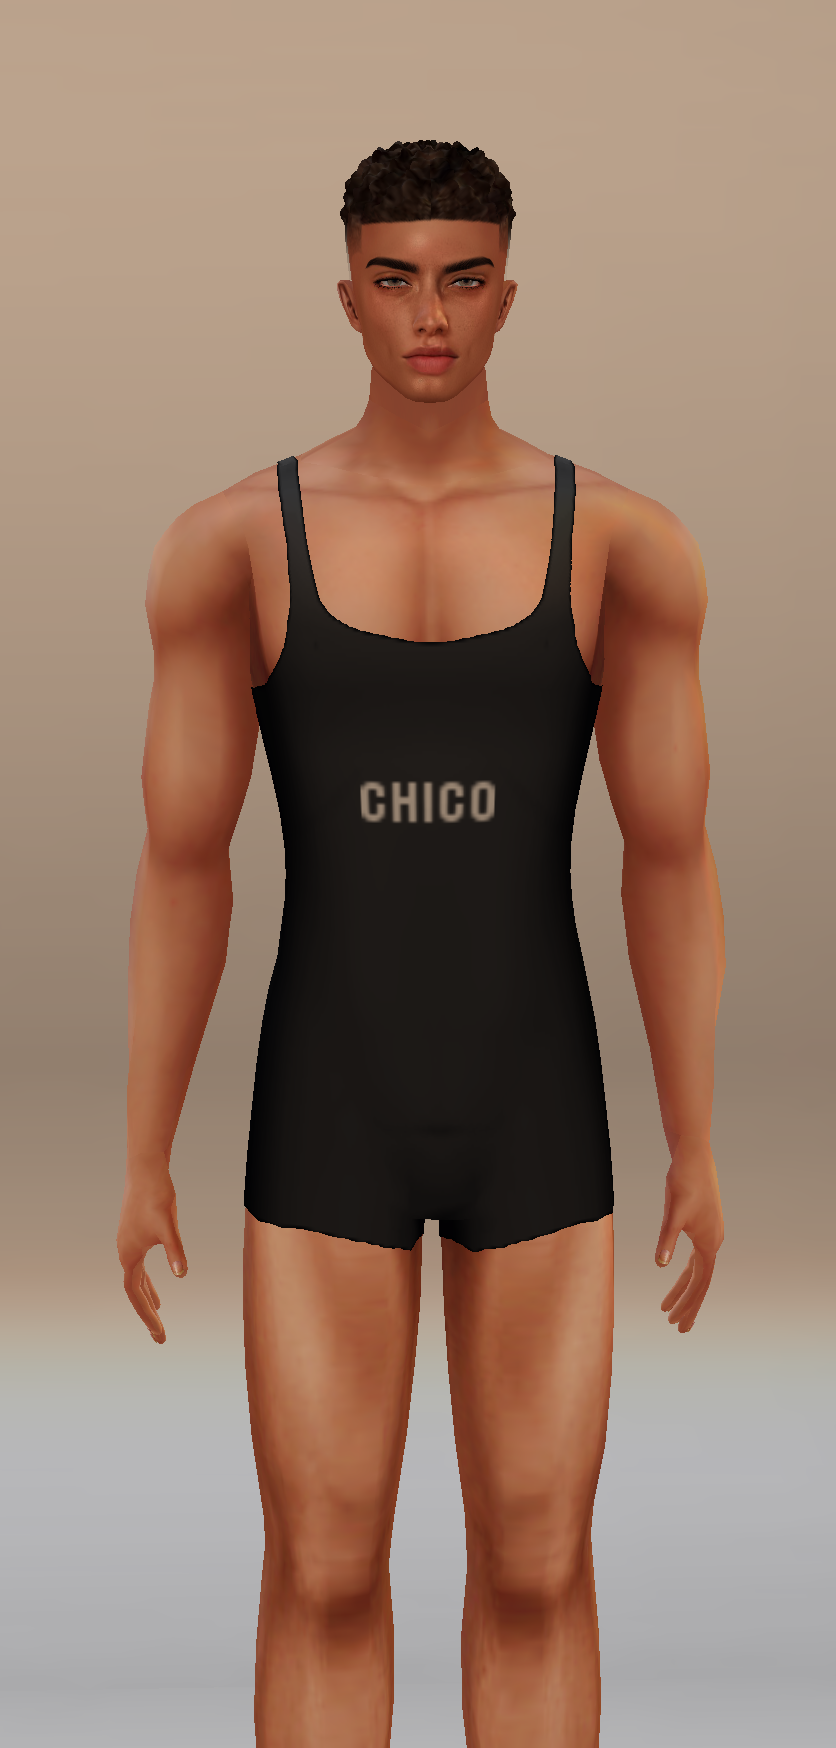 SOB3D Chico Model